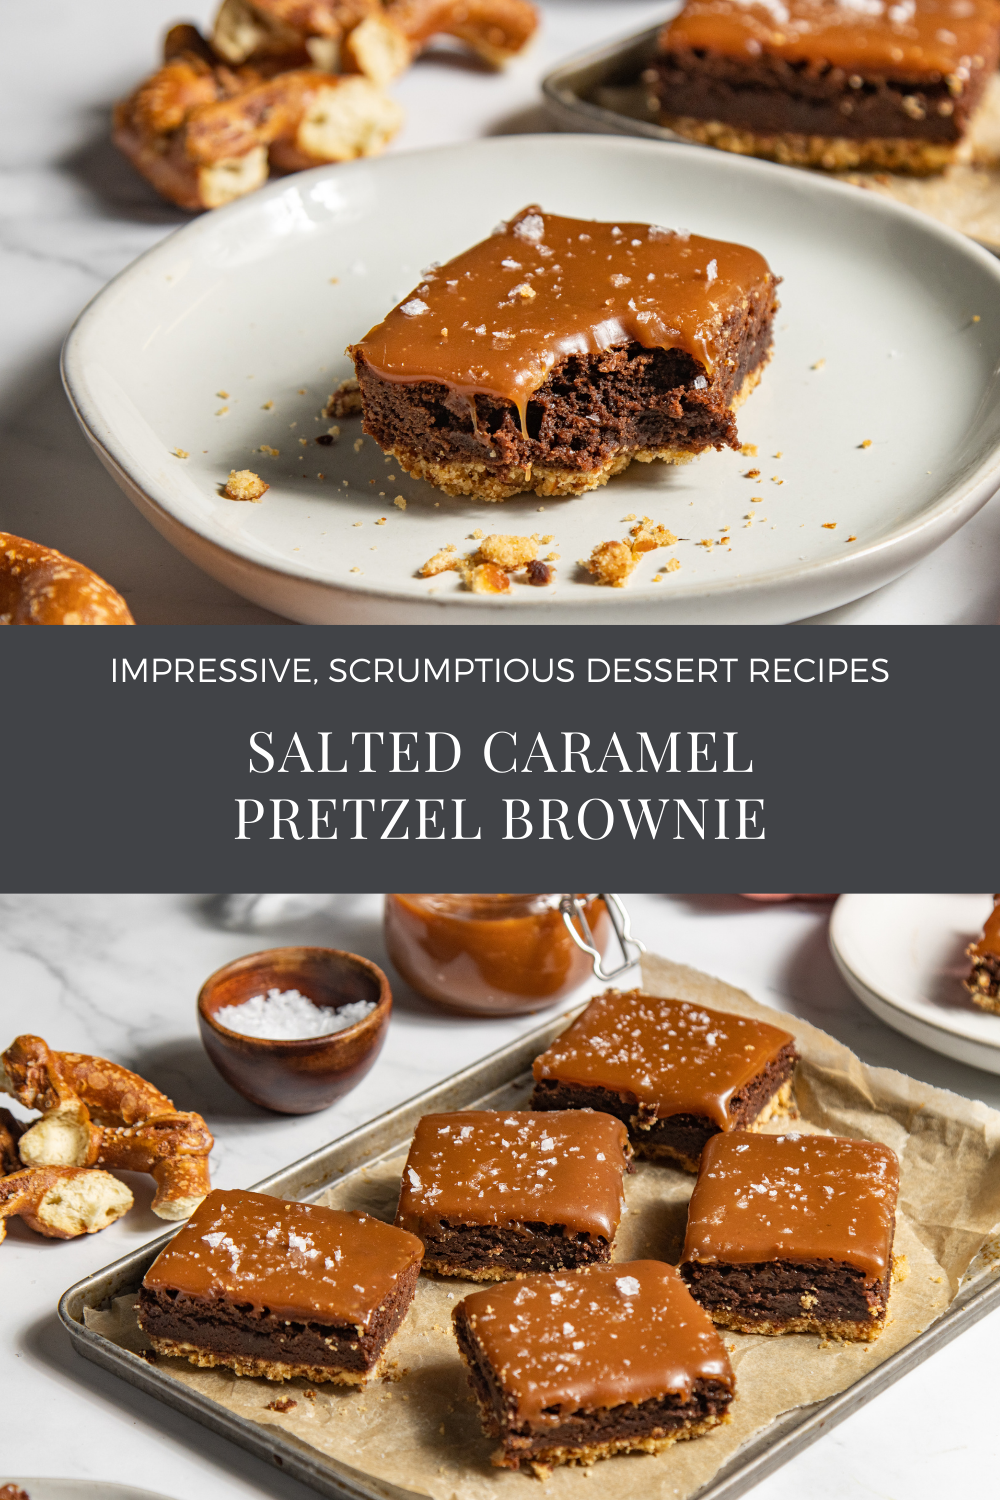 Pretzel Brownie Recipe